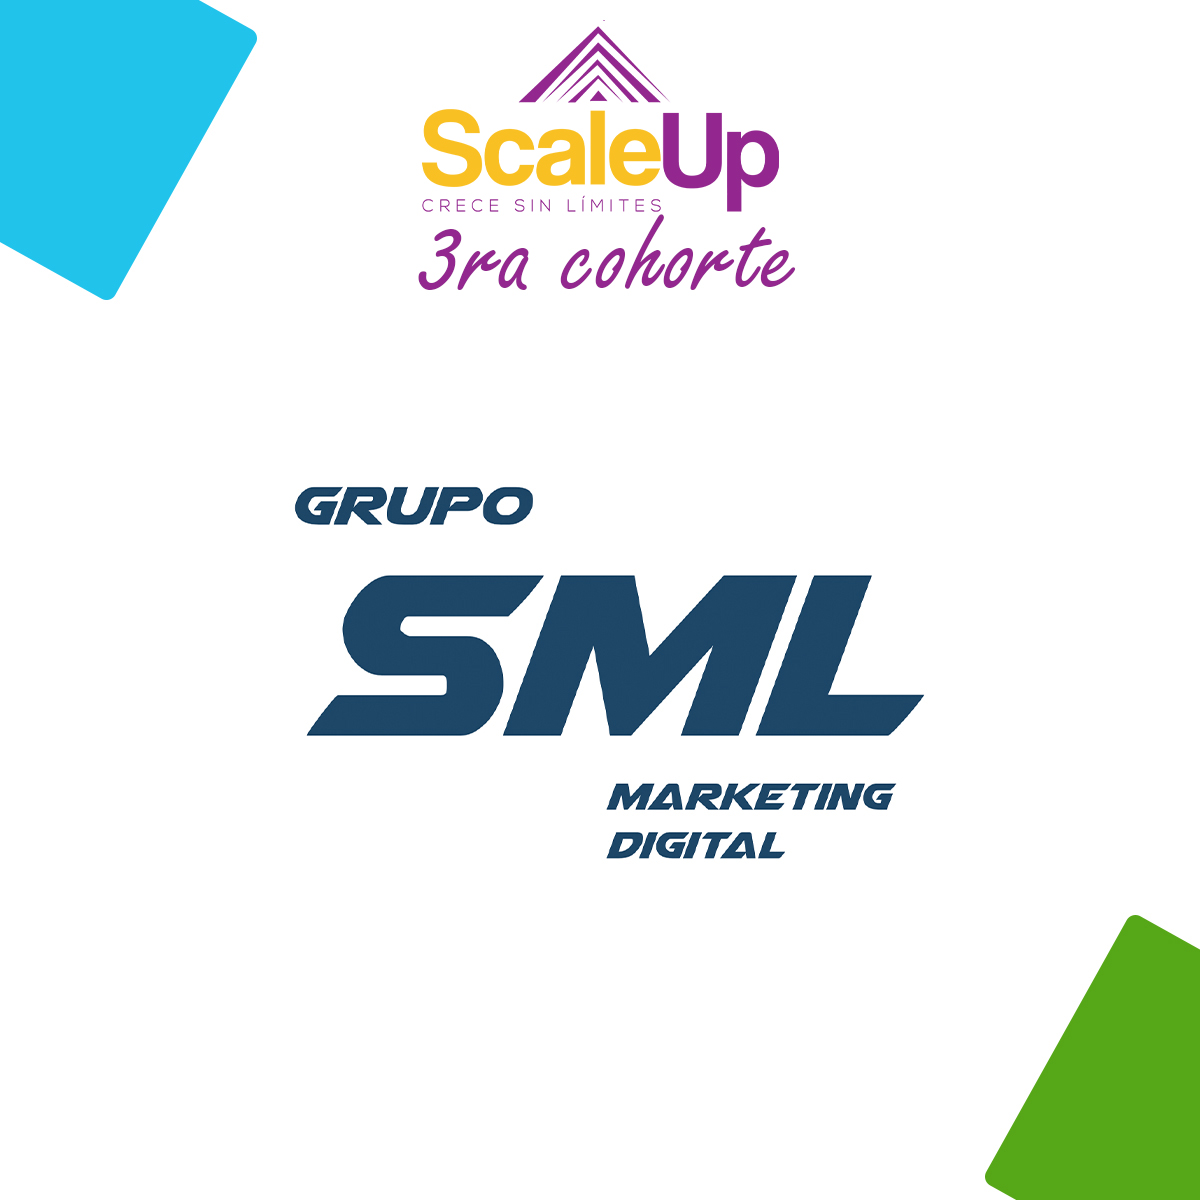 📣 Grupo SML Estrategias Digitales de Mercadeo se une al ecosistema de ScaleUp #CreceSinLimites